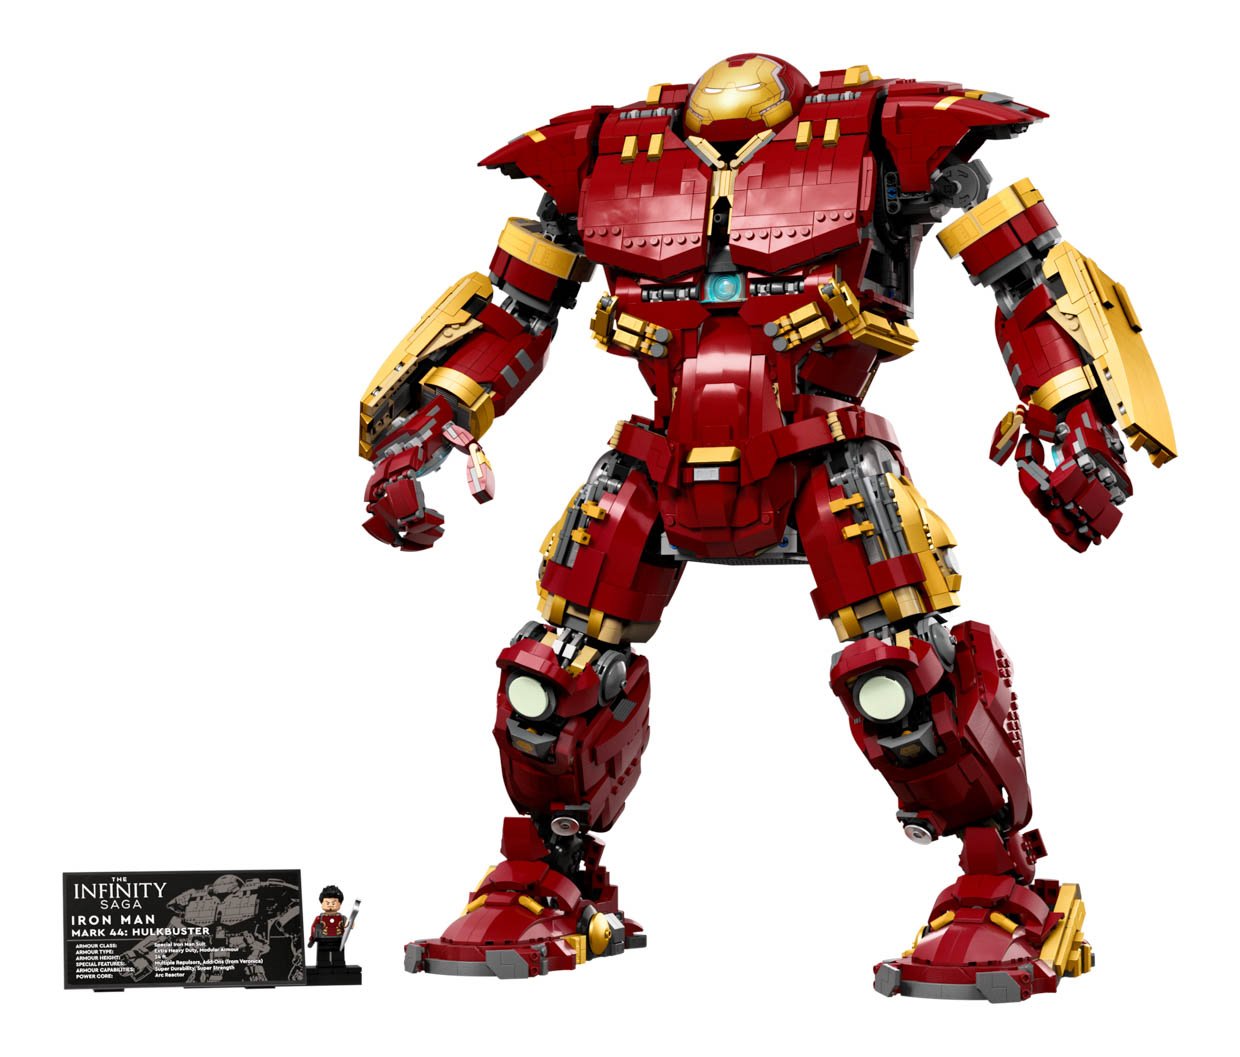 LEGO x Marvel Iron Man Hulkbuster 76210